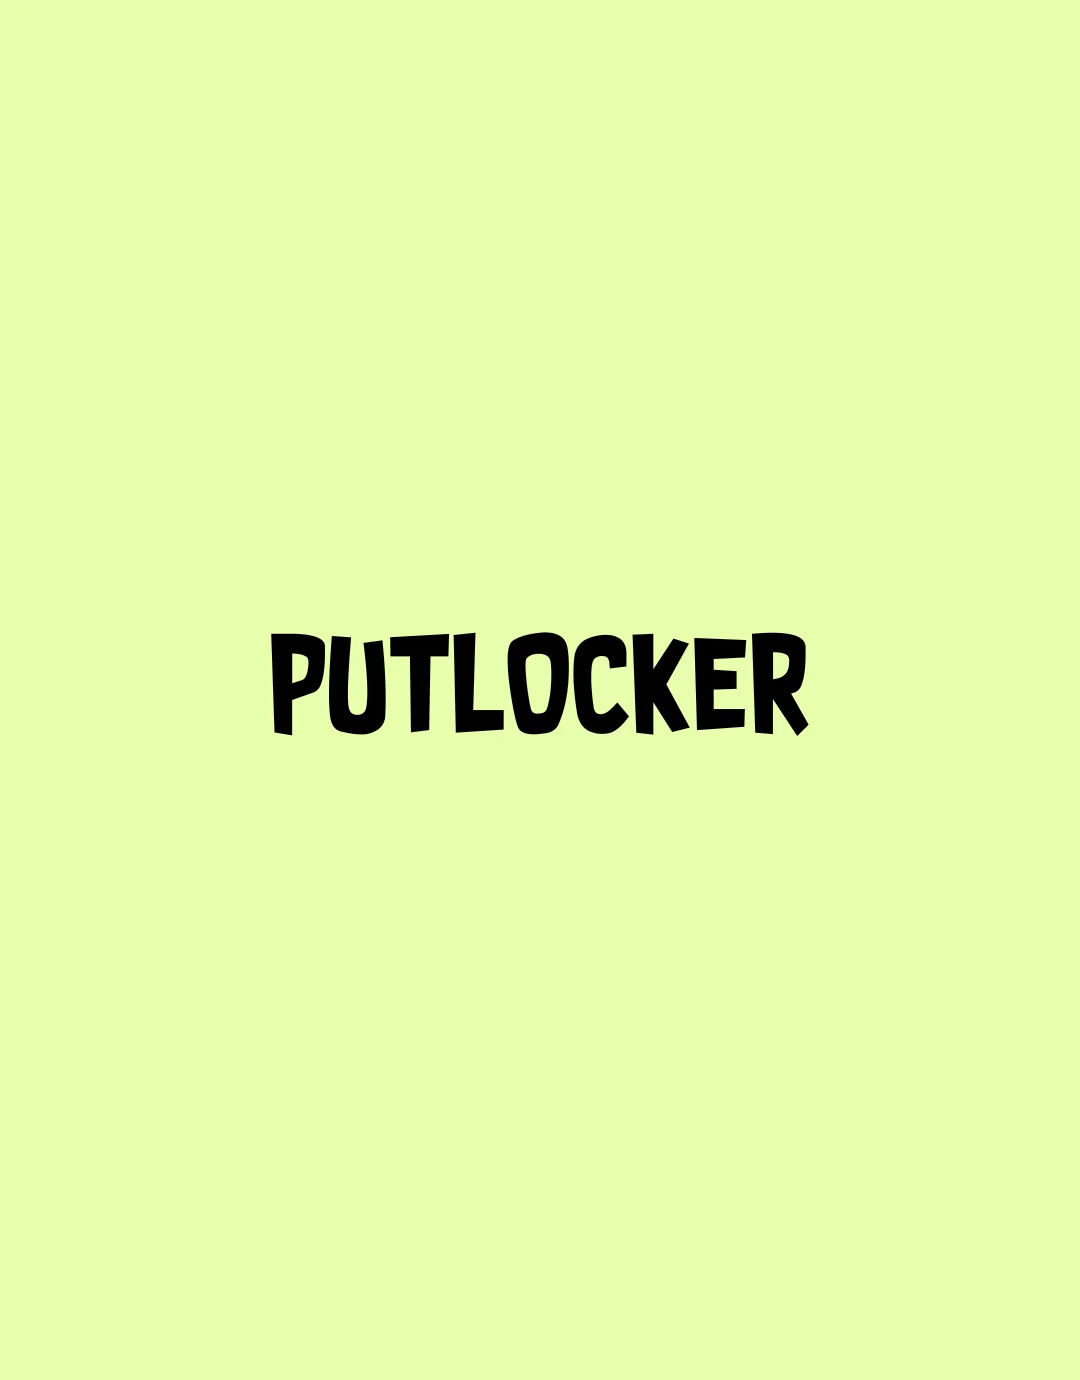 PUTLOCKER